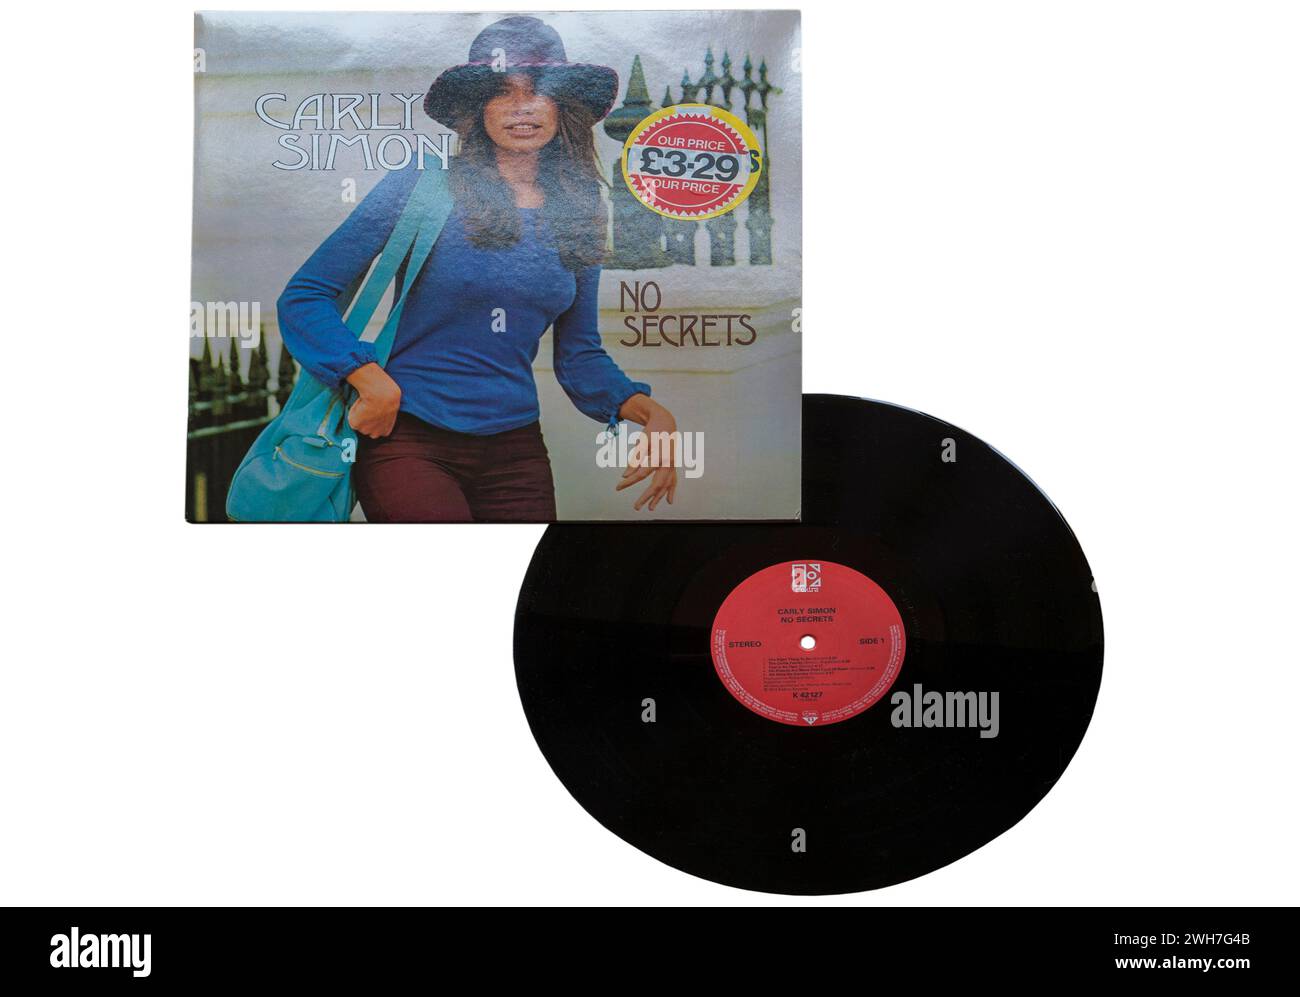 Carly Simon No Secrets Vinyl-Album-Cover isoliert auf weißem Hintergrund - 1972 Stockfoto